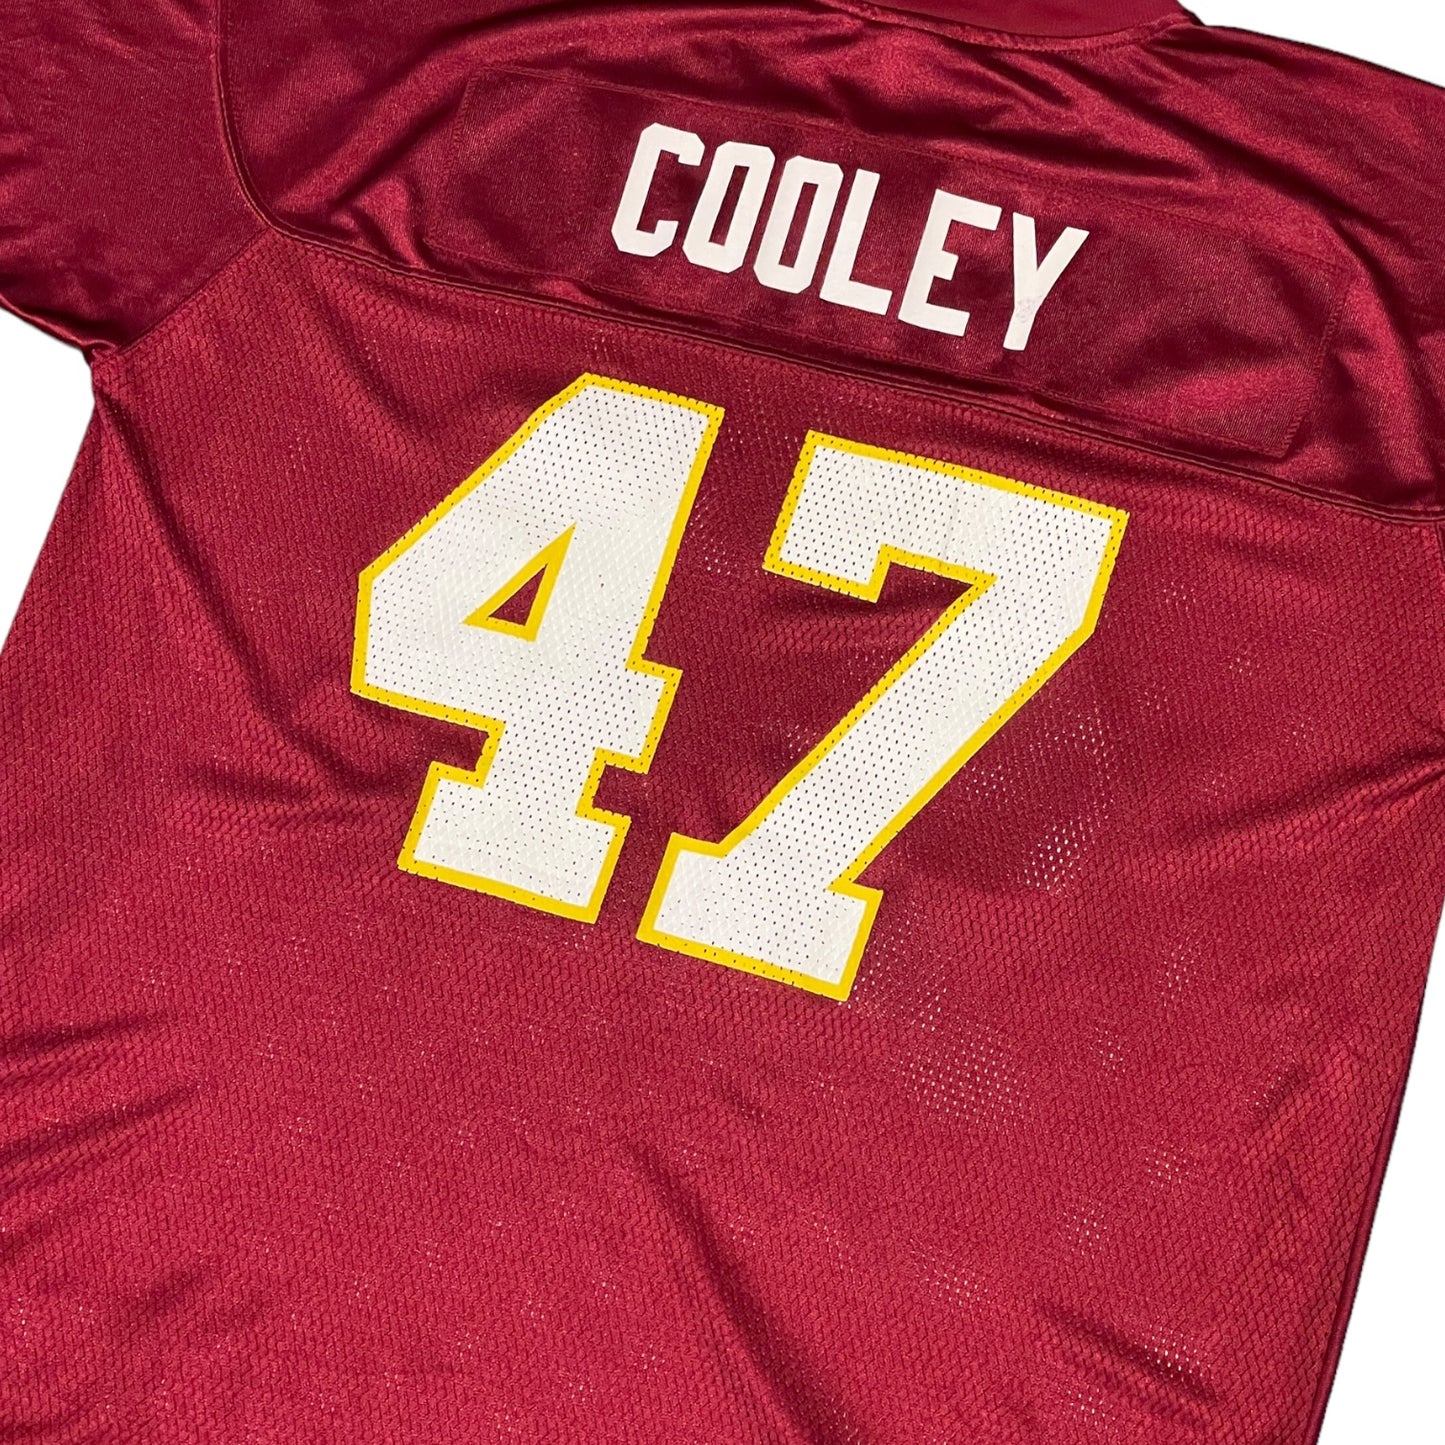 Reebok Redskins "Cooley" 47 NFL Jersey